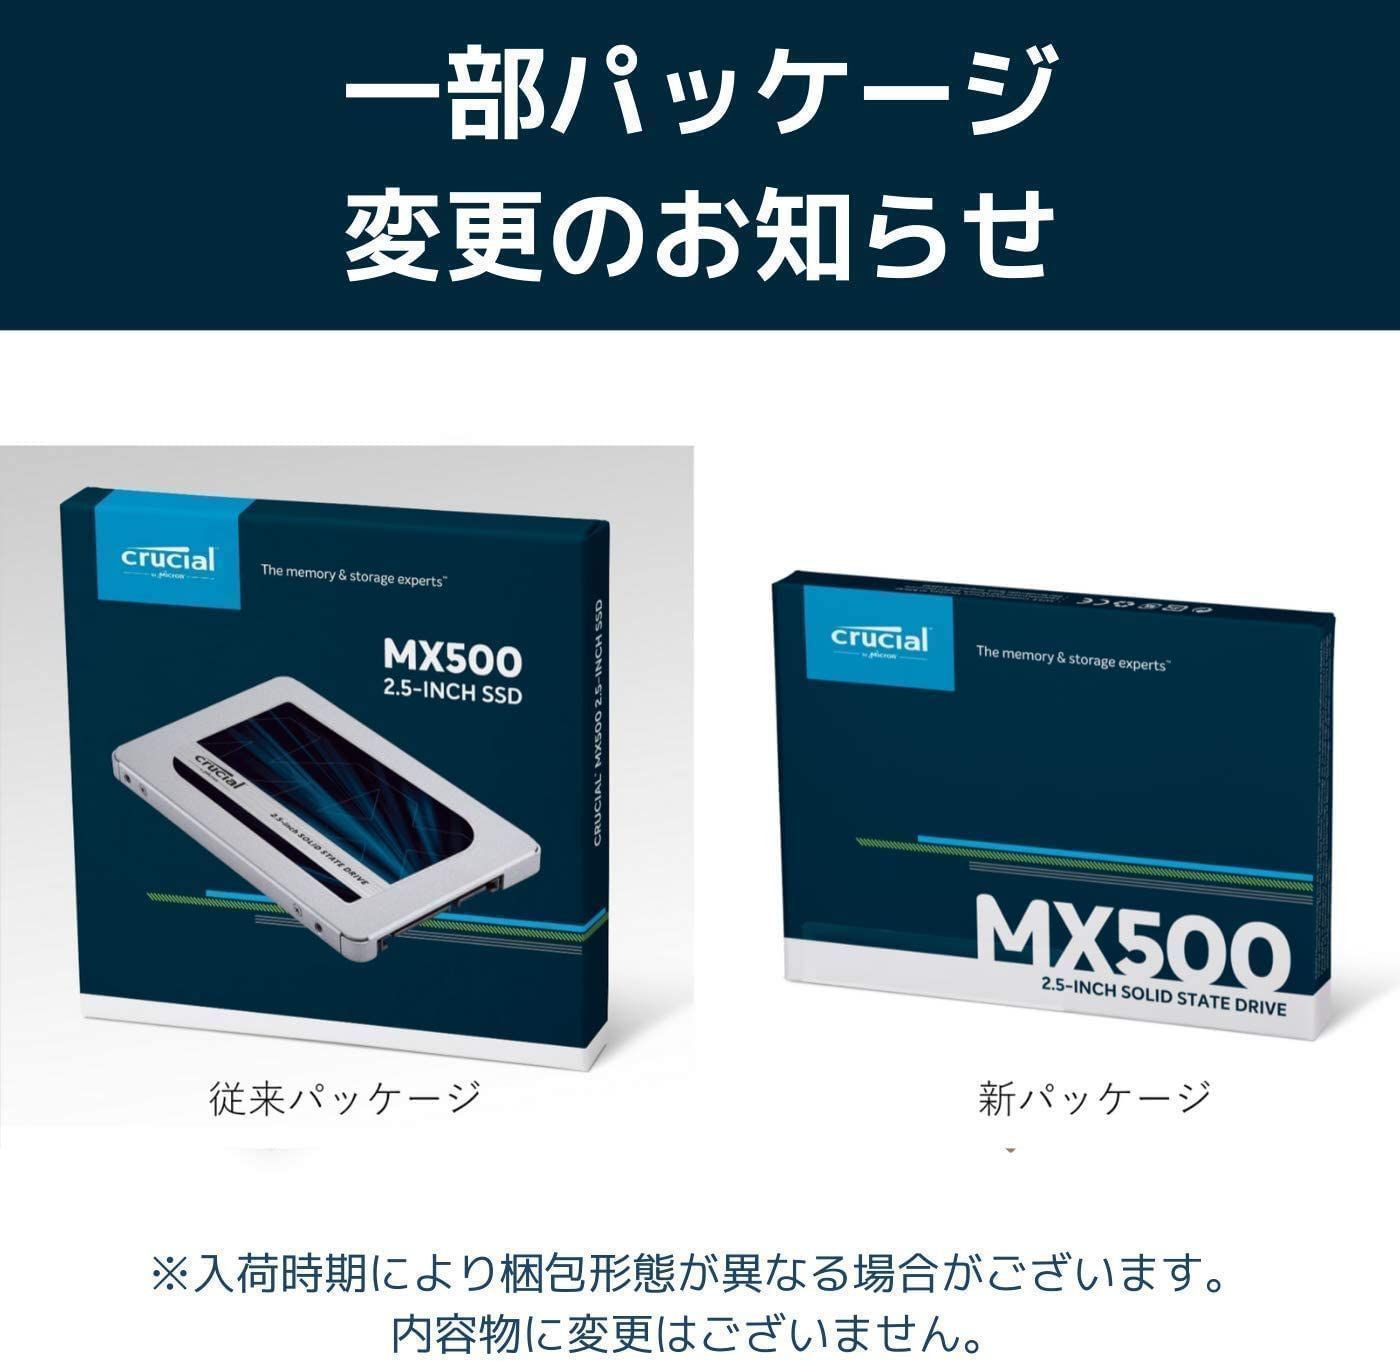 【crucial】 MX500 2.5インチ SSD 1TB 新品未開封PC/タブレット